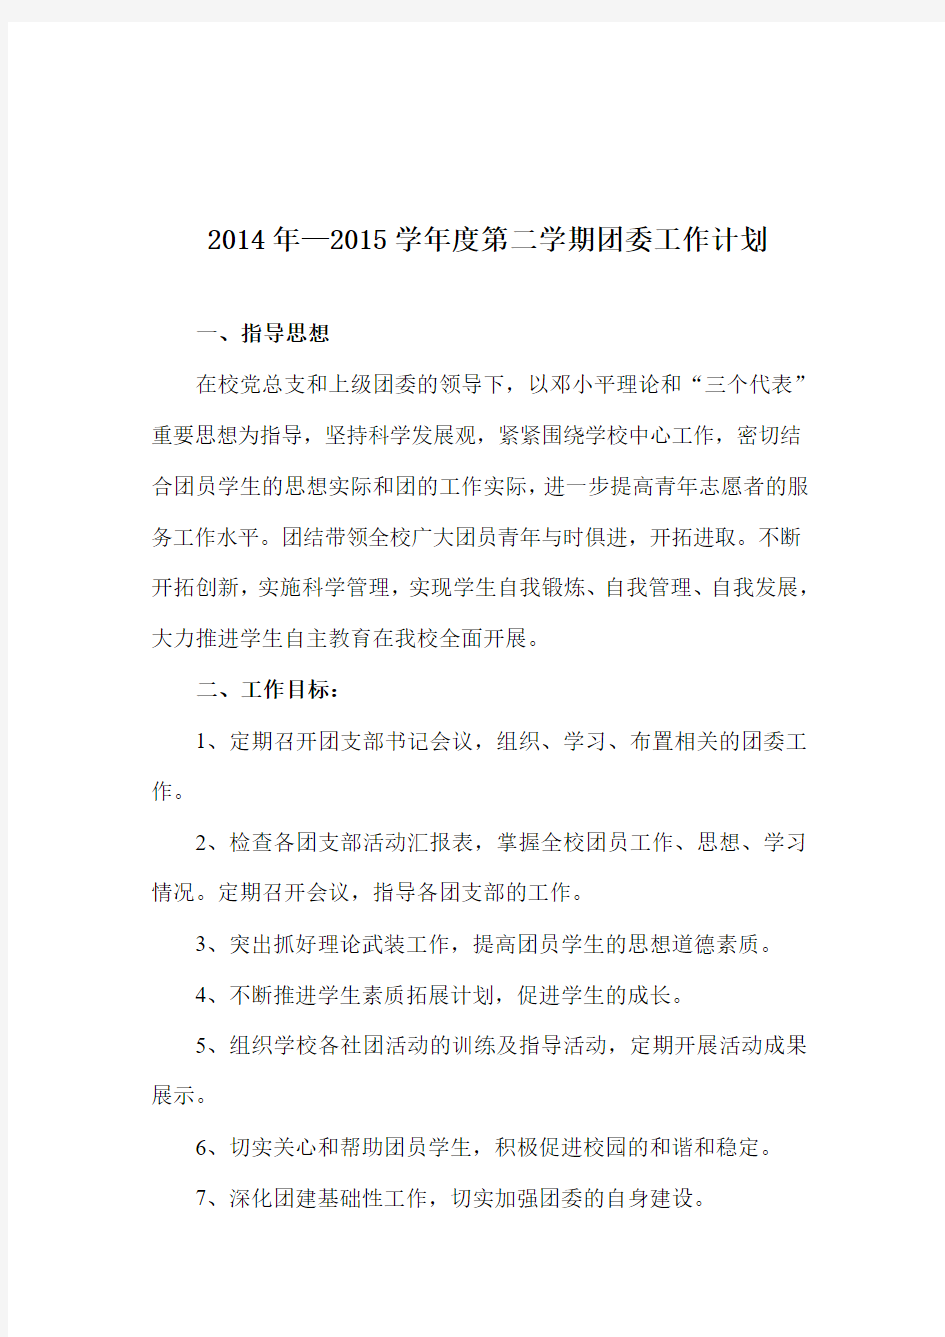 关岭民族高级中学团委2014—20125第二学期工作计划